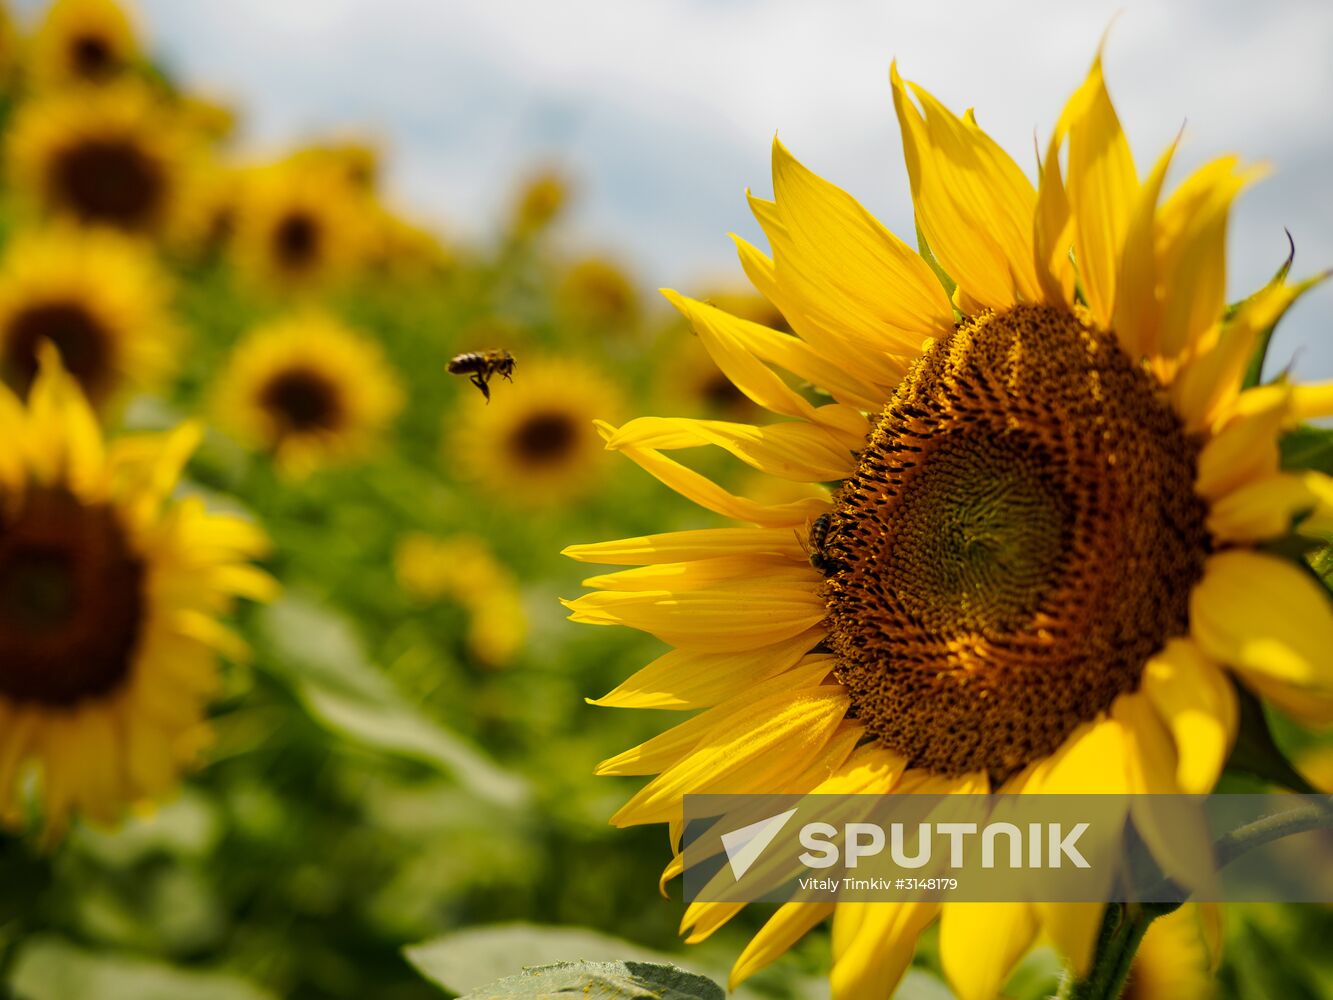 Sunflower fields in Krasnodar Territory